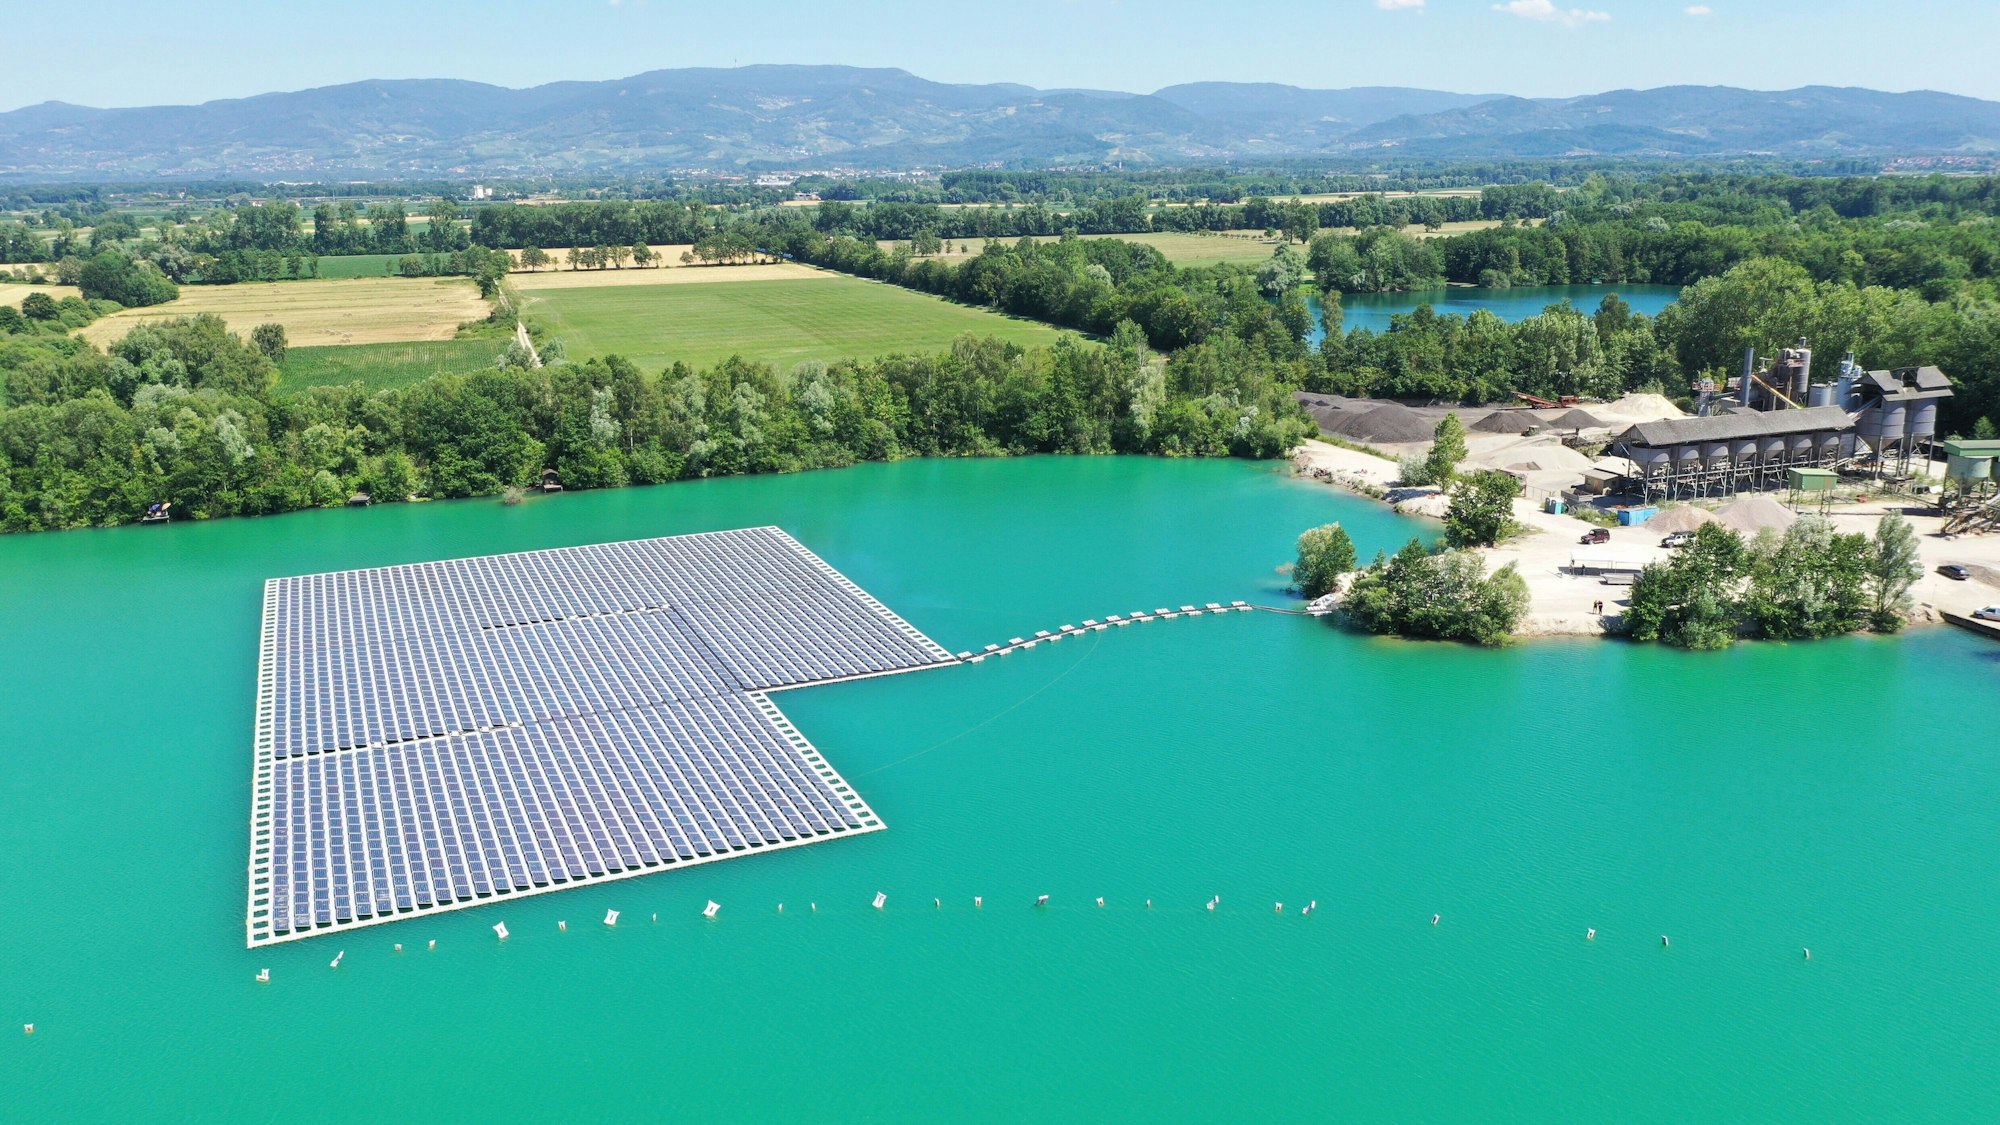 Eine Photovoltaik-Anlage schwimmt auf dem Baggersee Maiwald.